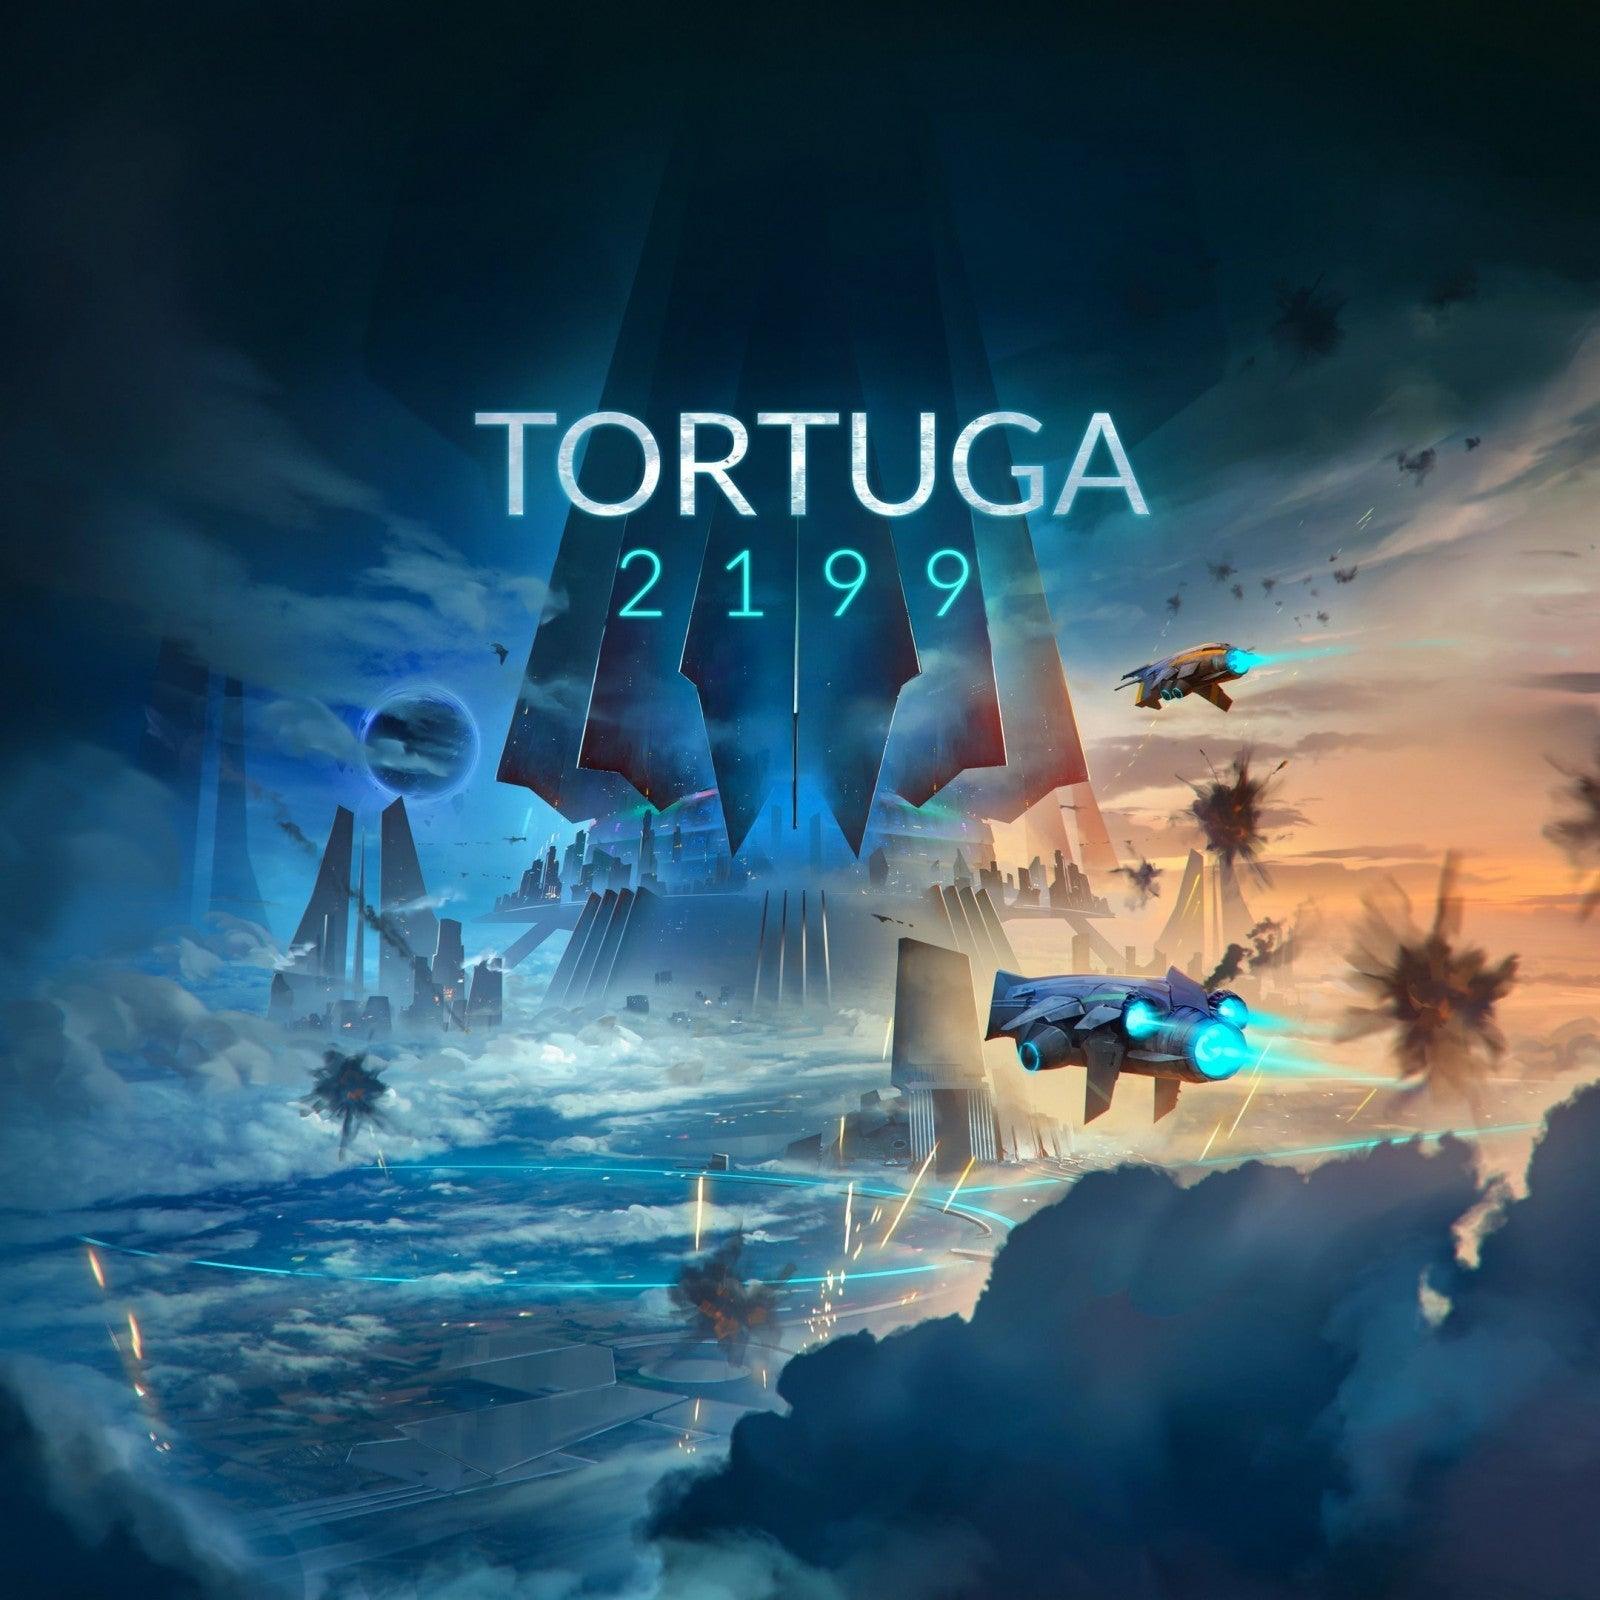 Tortuga 2199 Grey Fox Games Titan Pop Culture